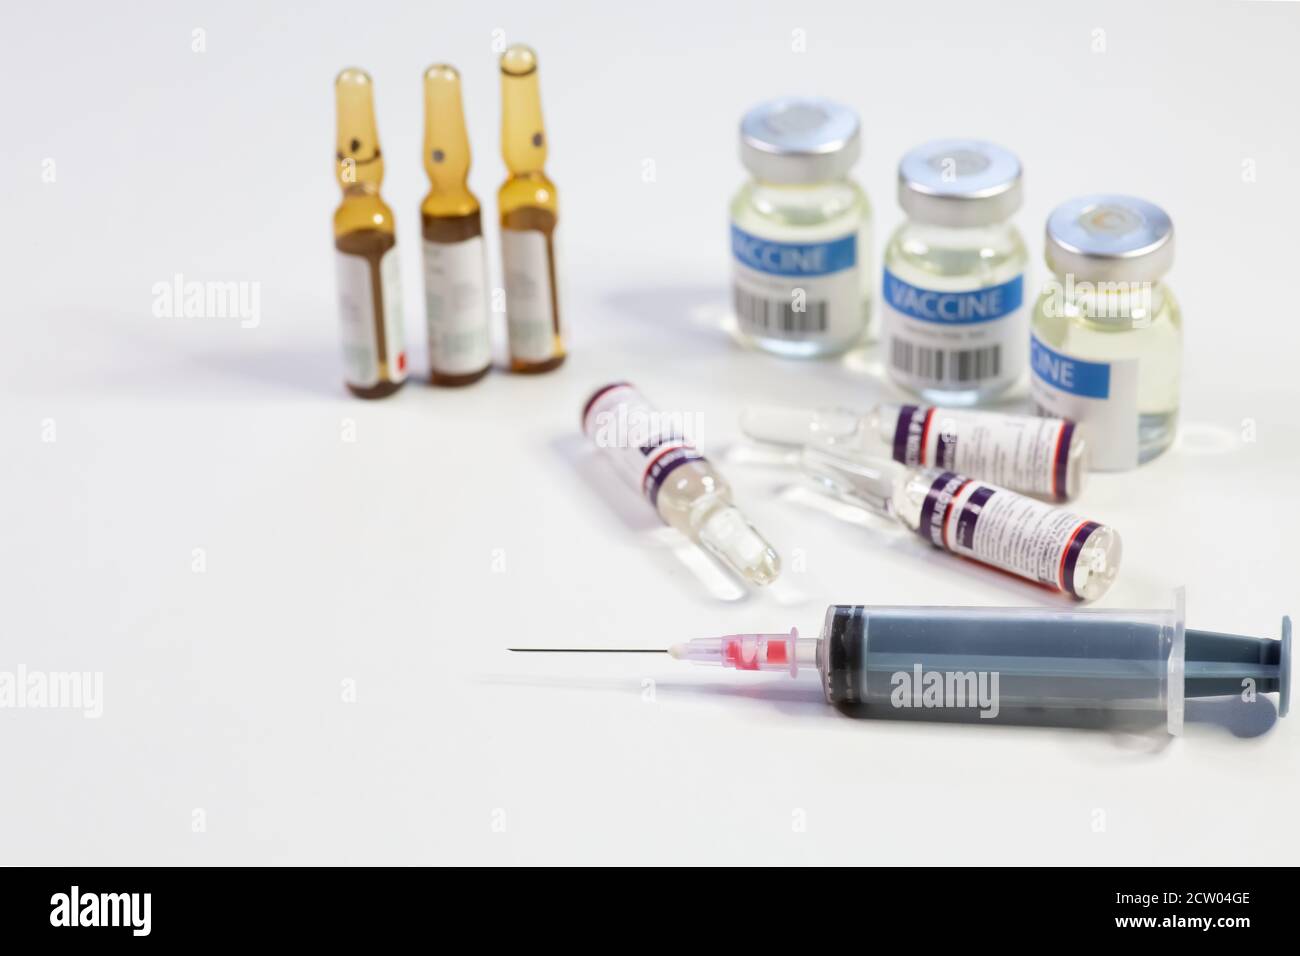 Hypodermische Spritzennadel mit Impfstoffflaschen und Injektionsfläschchen auf Weißer Hintergrund Stockfoto